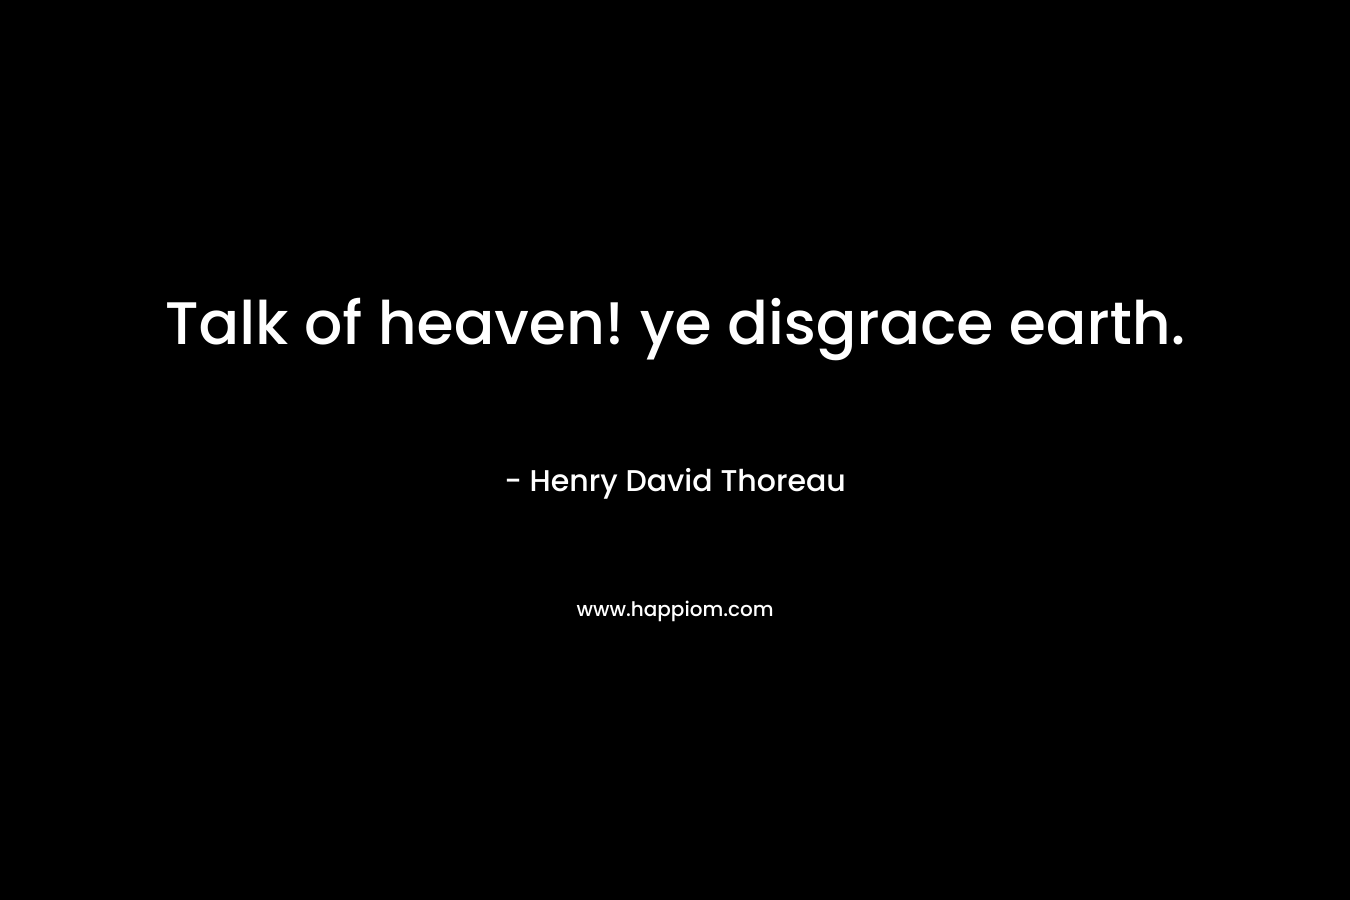 Talk of heaven! ye disgrace earth.